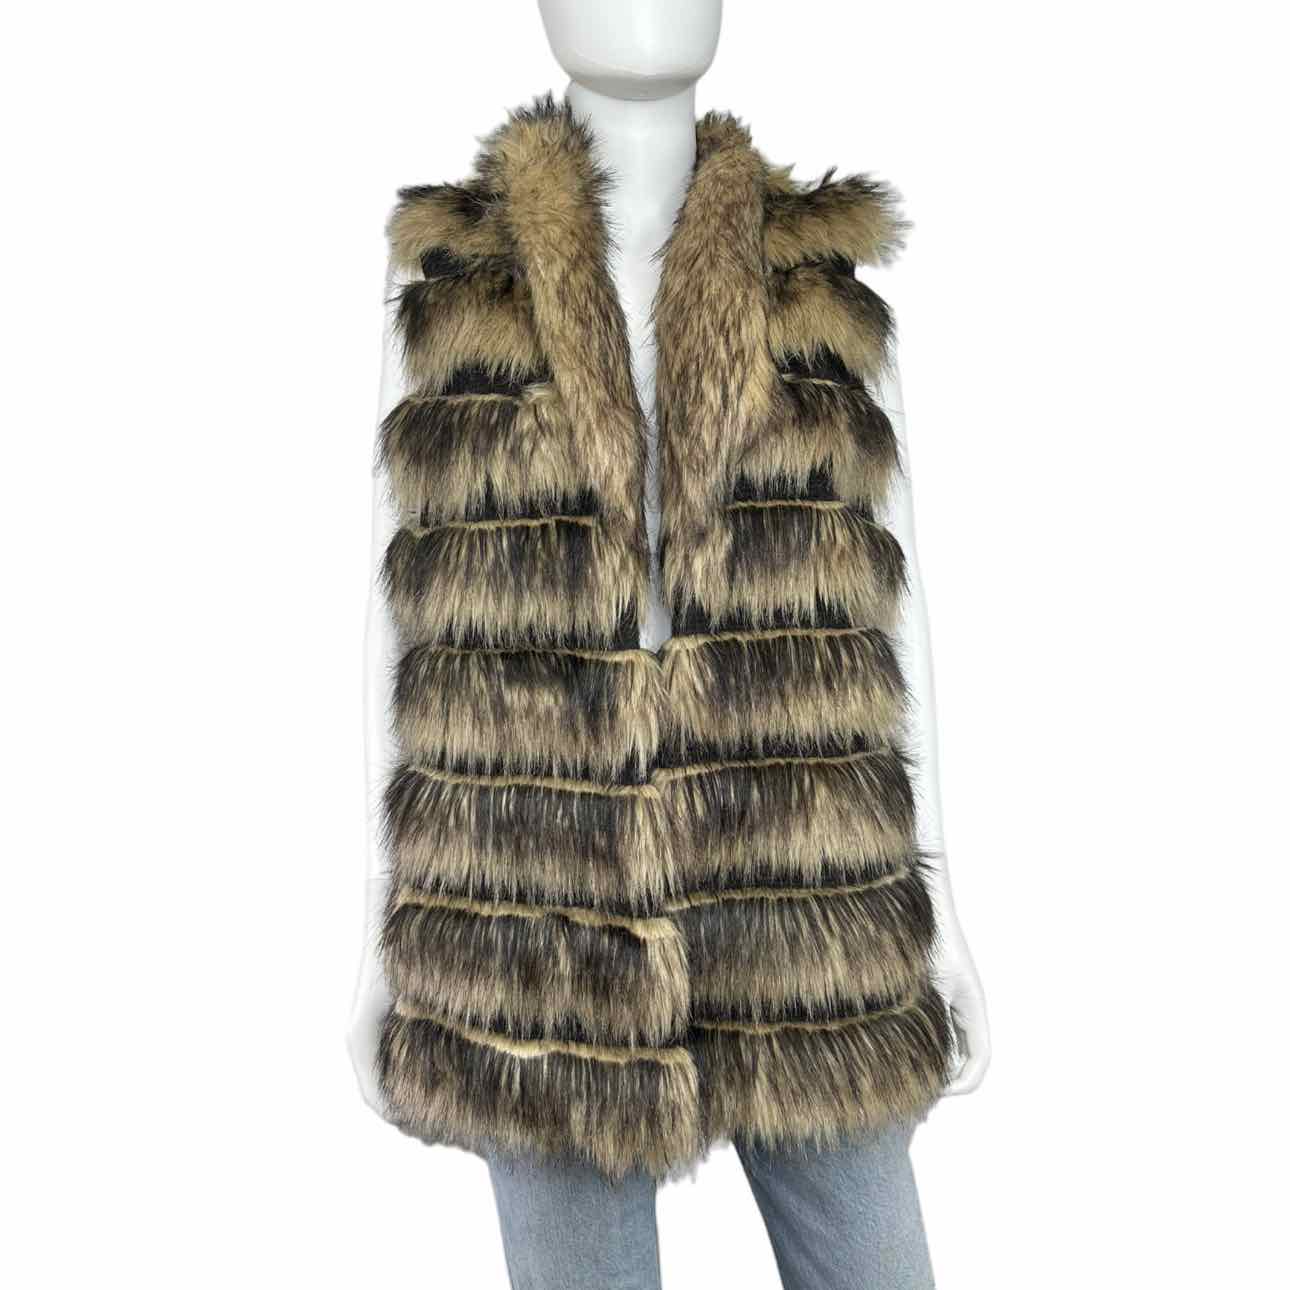 brown faux fur vest